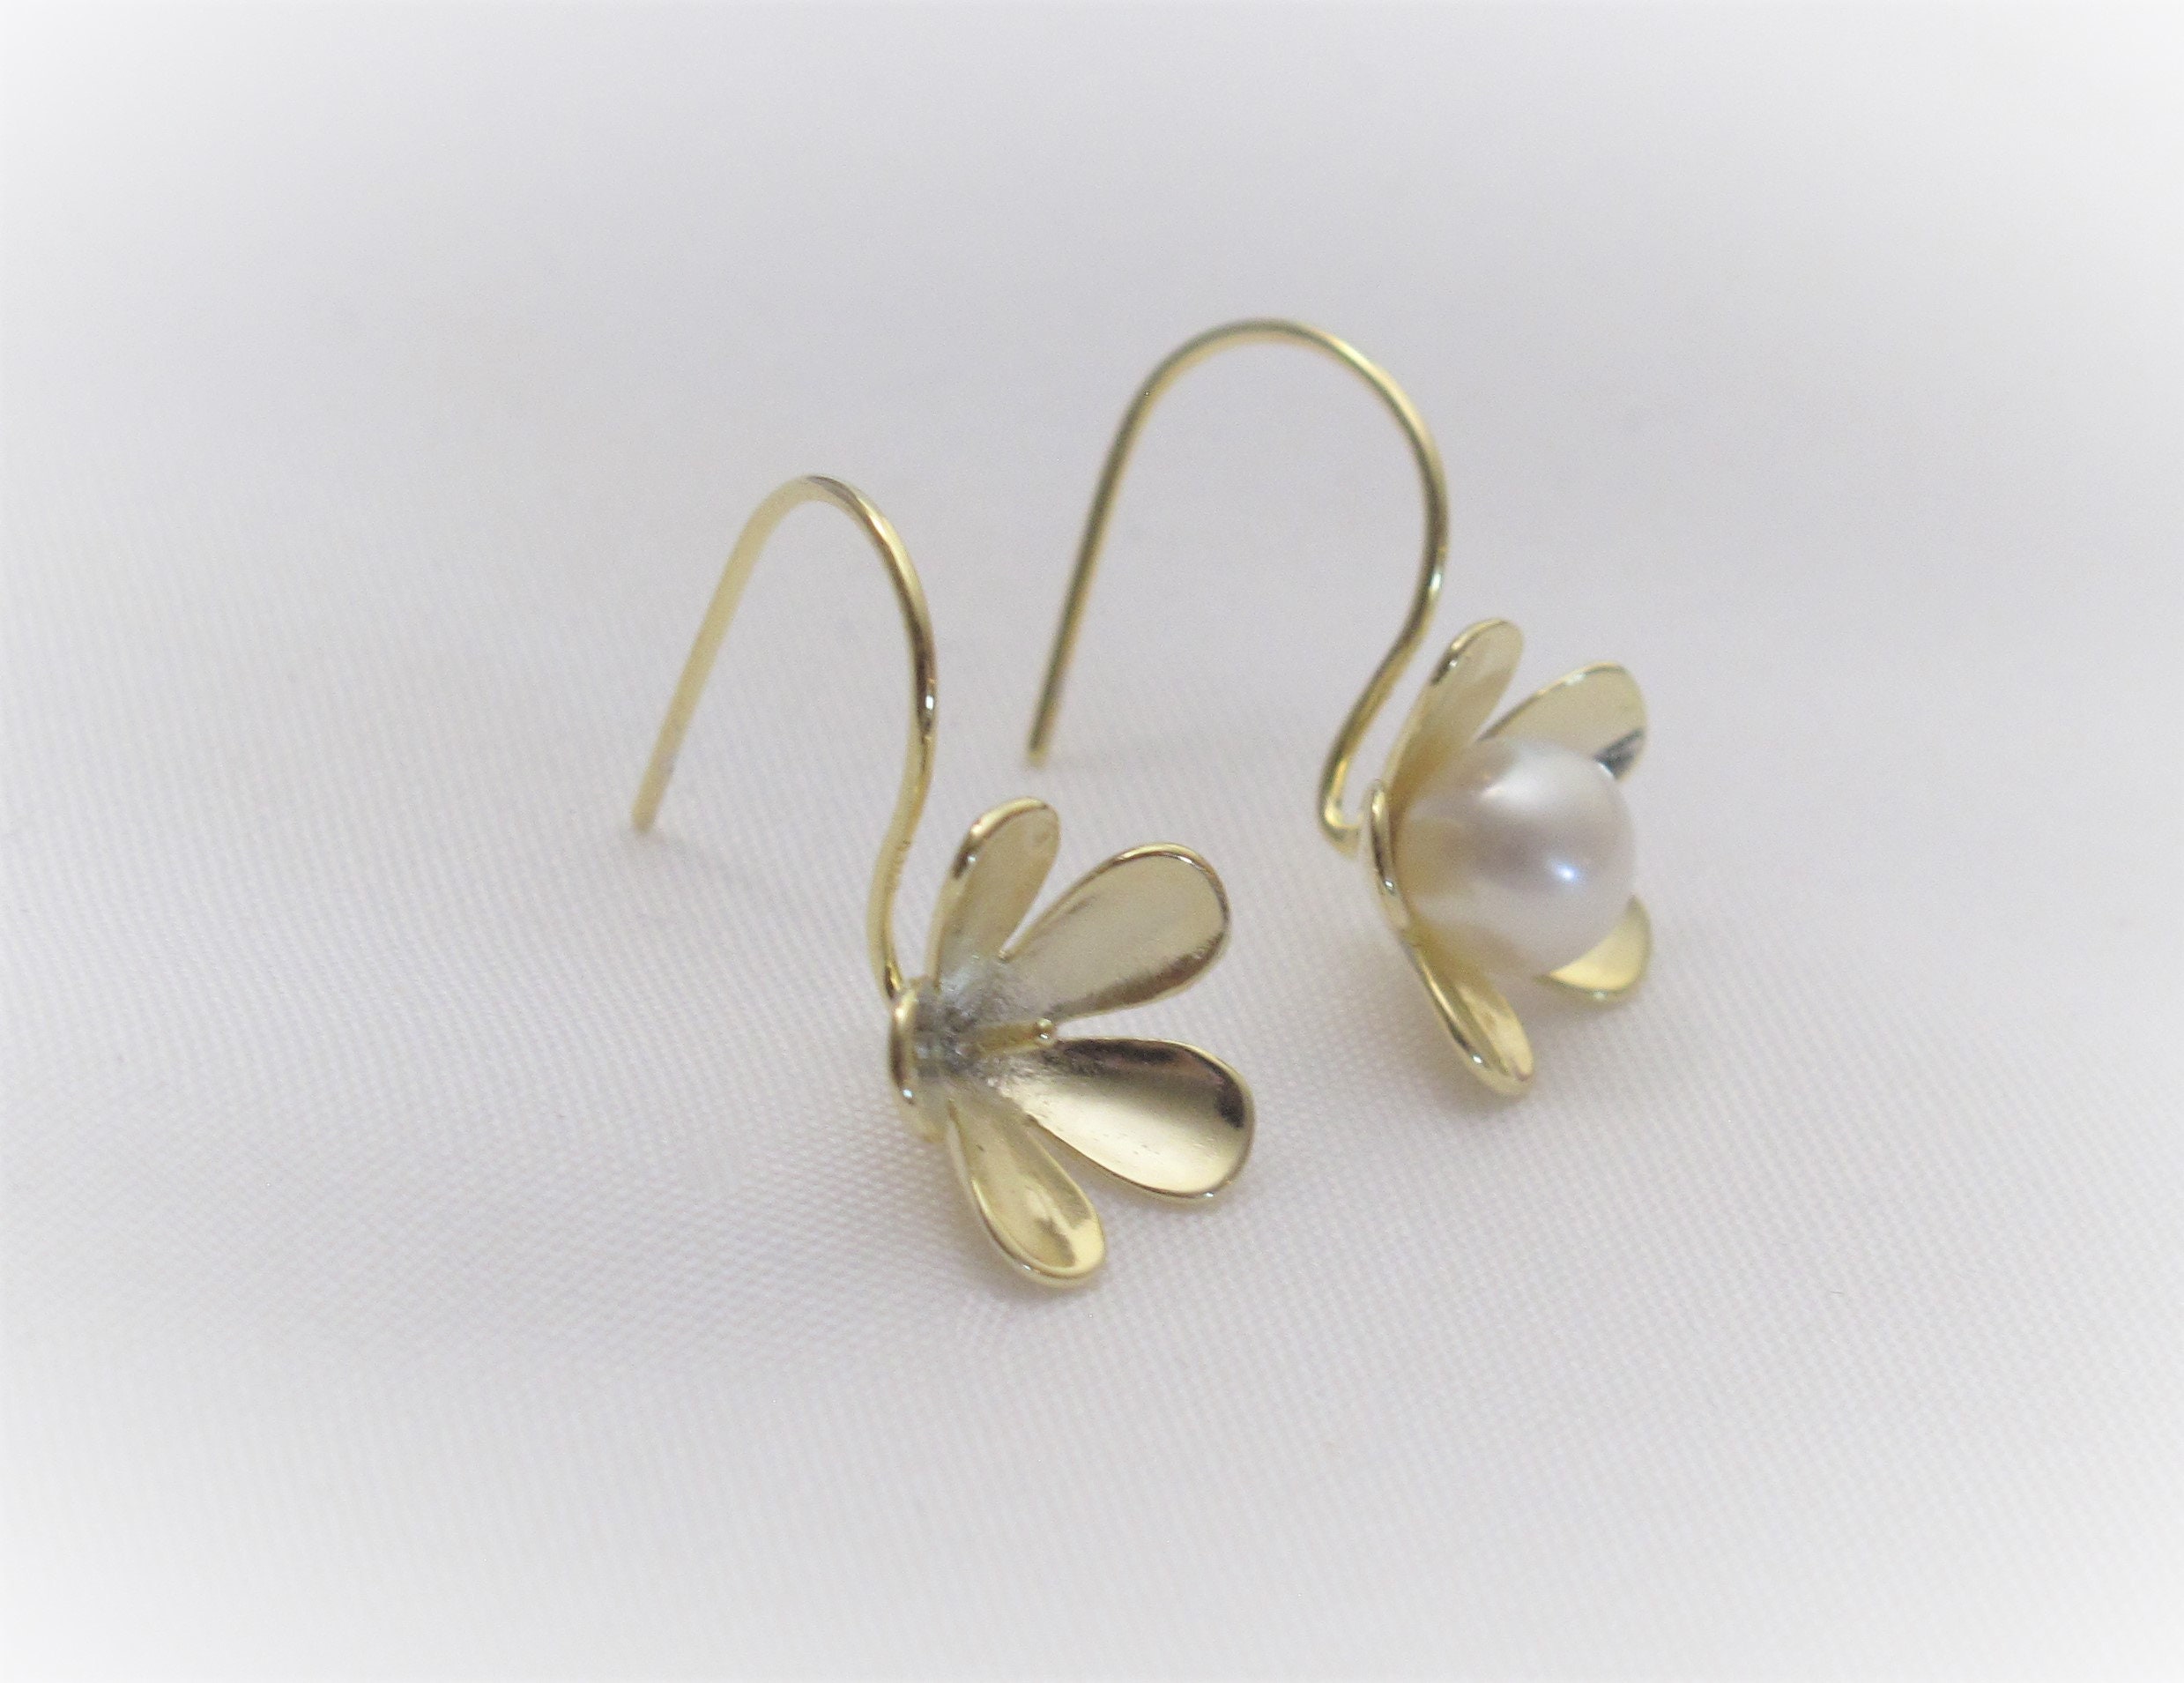 Silver Flower Earring Hooks, S925 Silver Earring Hooks for Jewelry Making,  Cross Earring Hooks With Loop, Leaf Ear Wire 